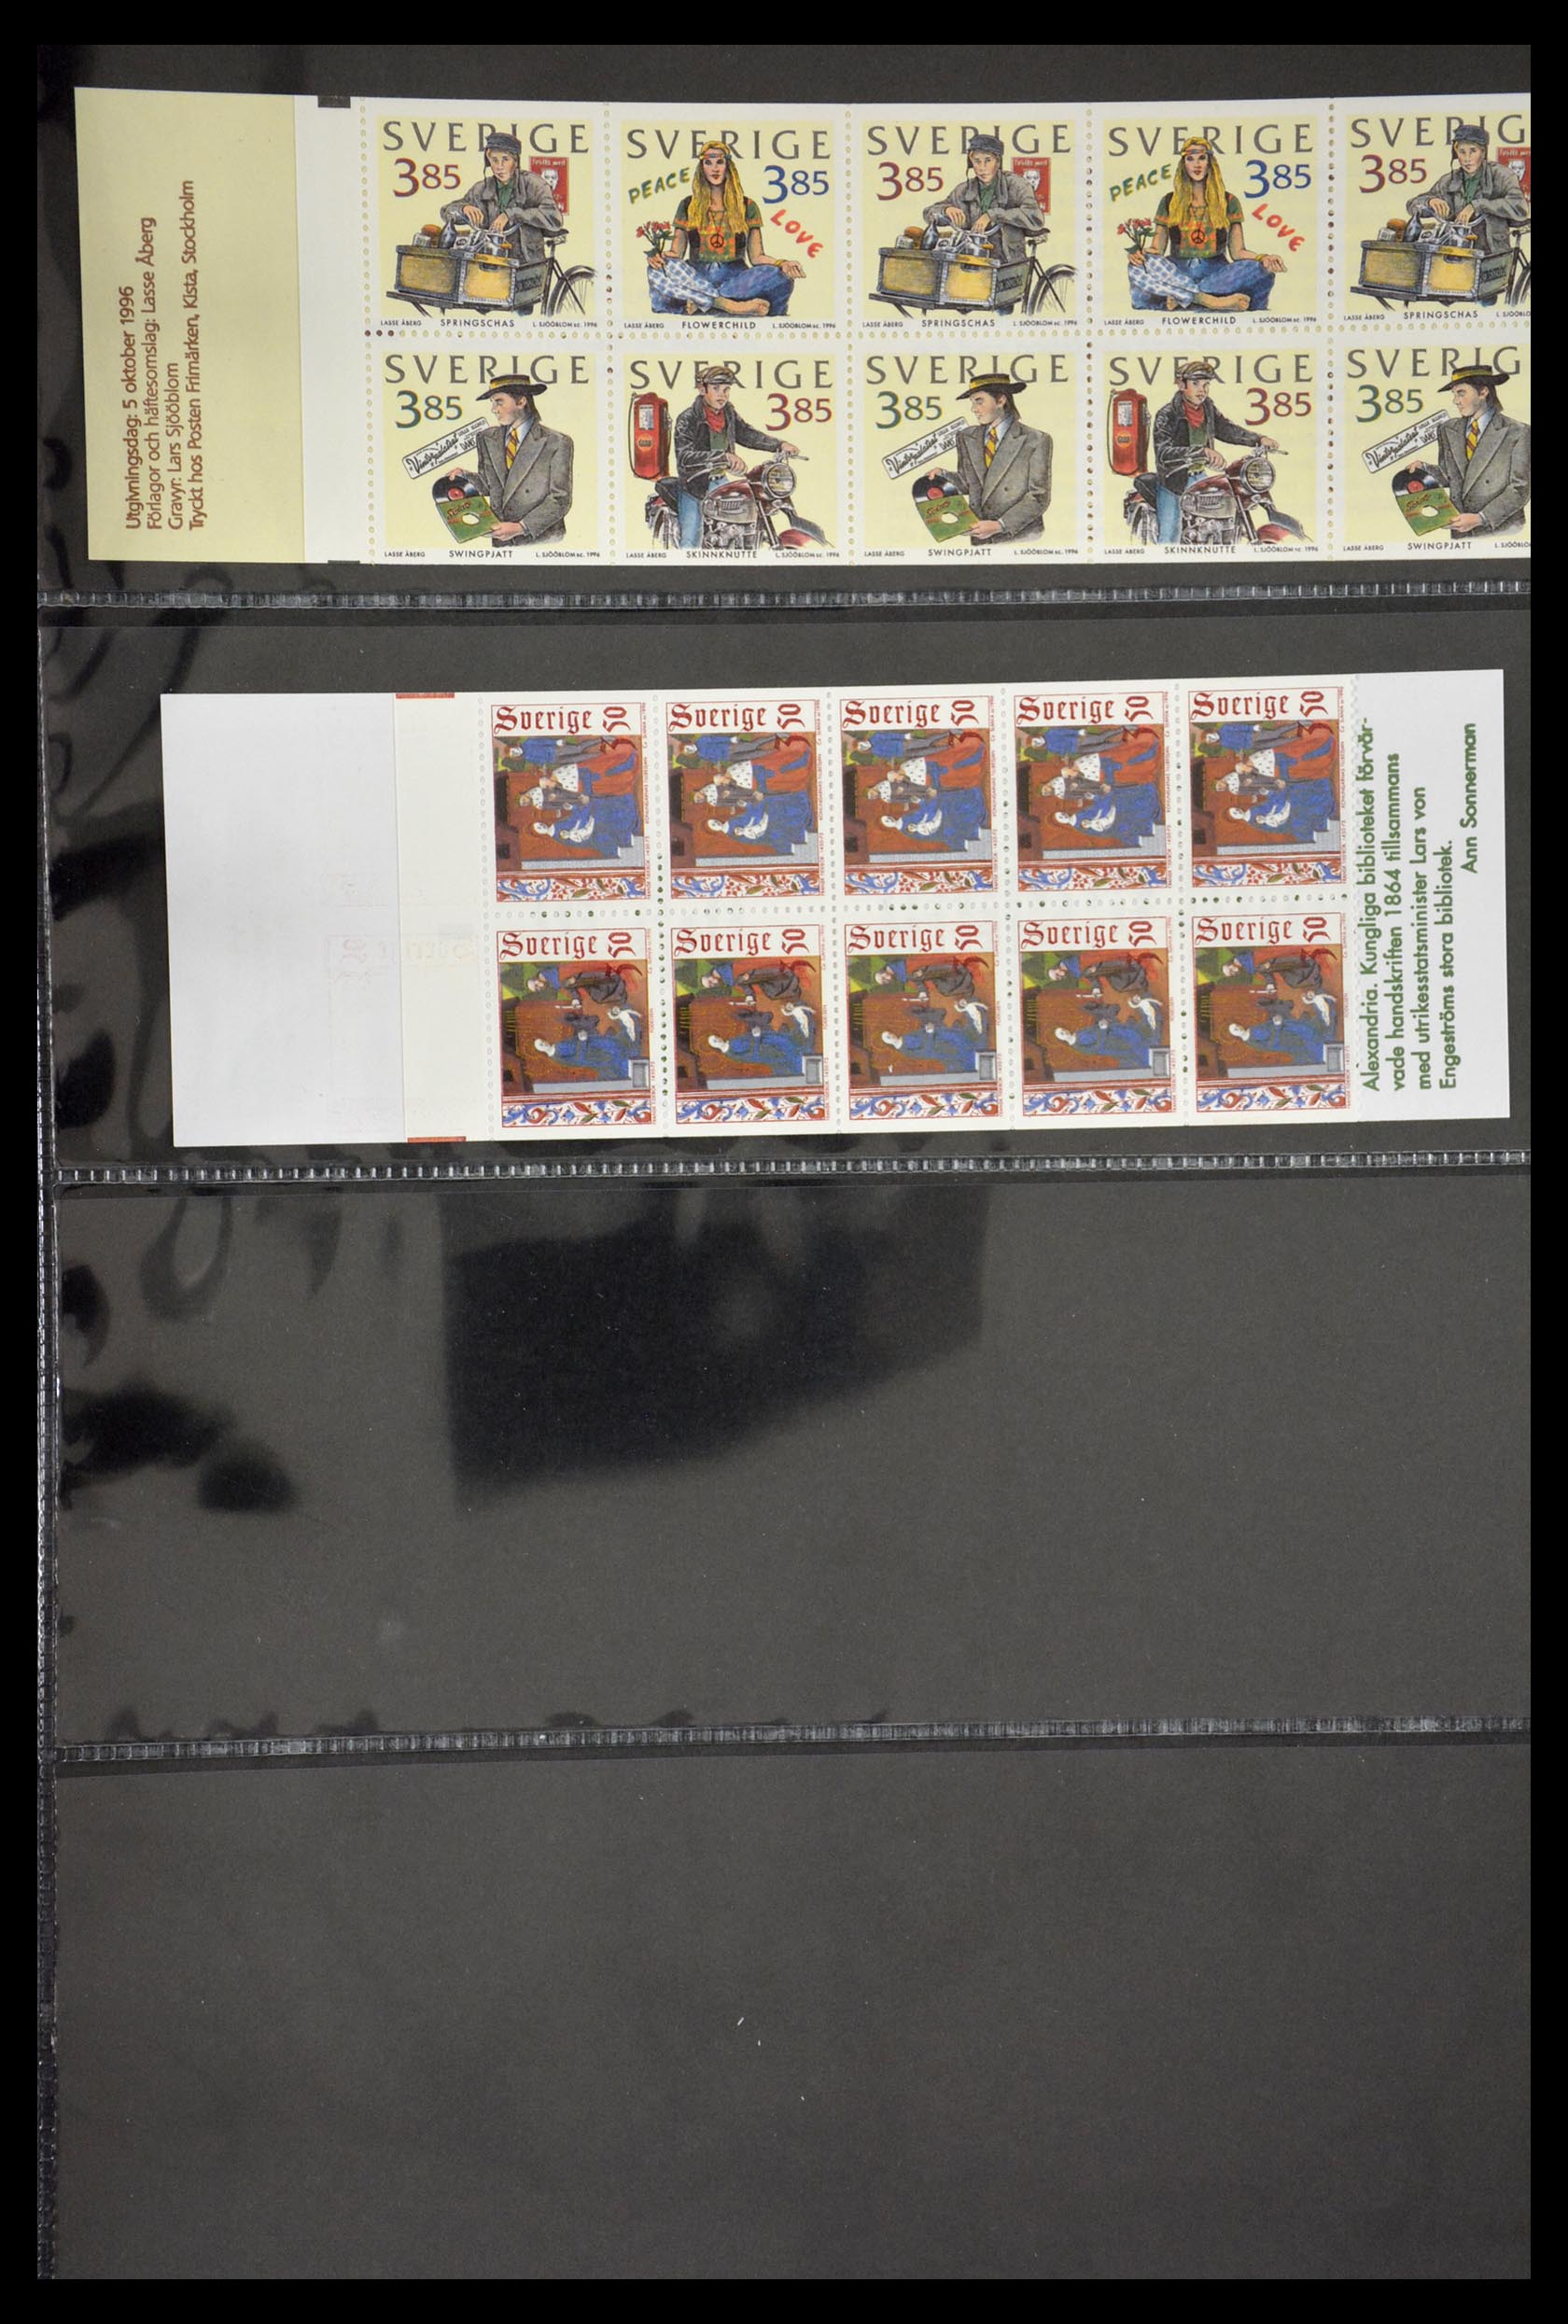 29368 106 - 29368 Sweden stamp booklets 1942-1996.